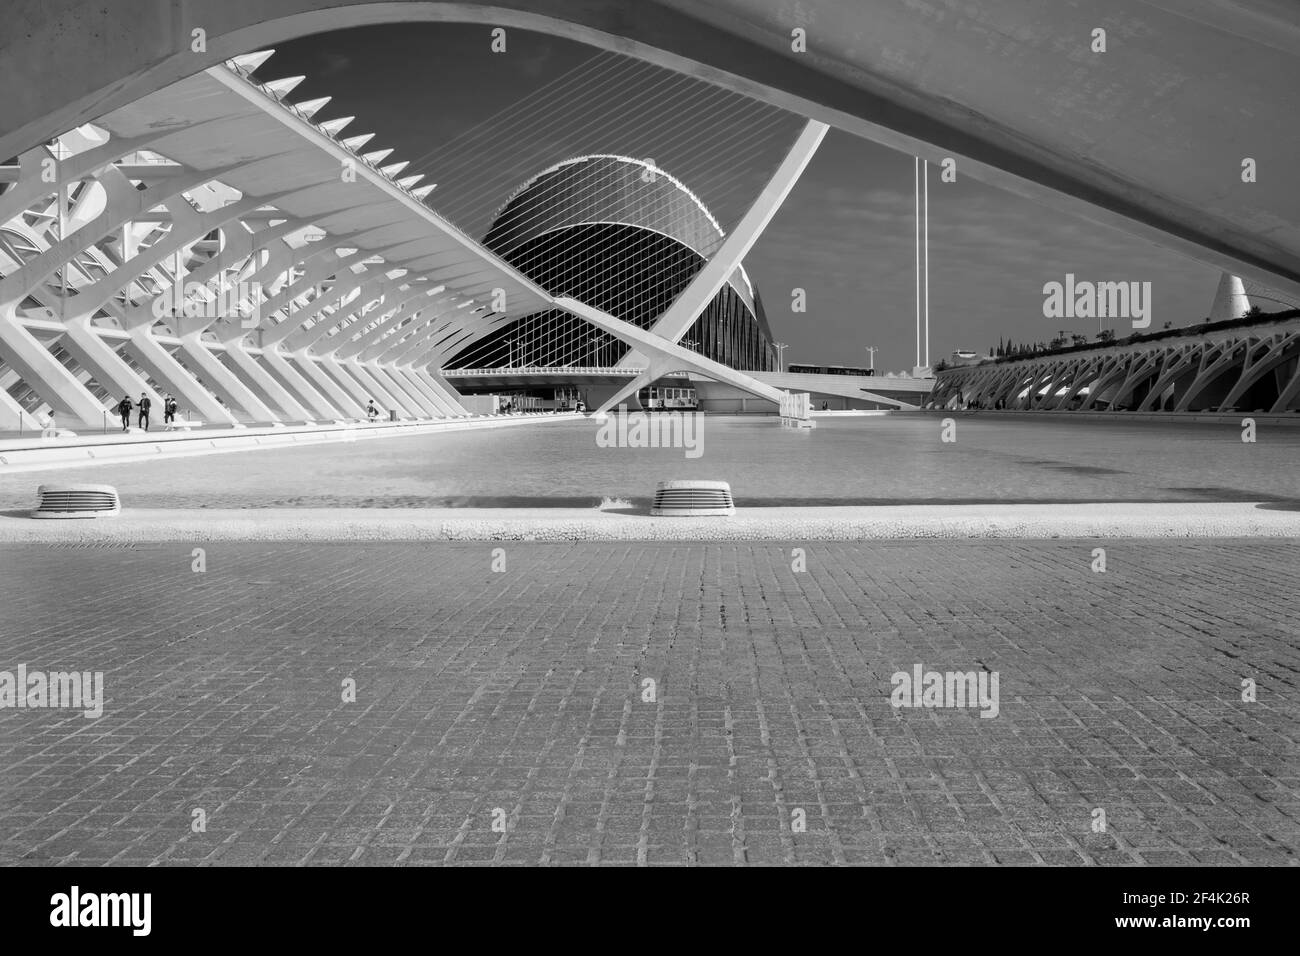 Le armoniose geometrie del complesso architettonico chiamato Città delle Arti e delle Scienze, situato nella città di Valencia, Spagna. Immagine in bianco e nero Foto Stock